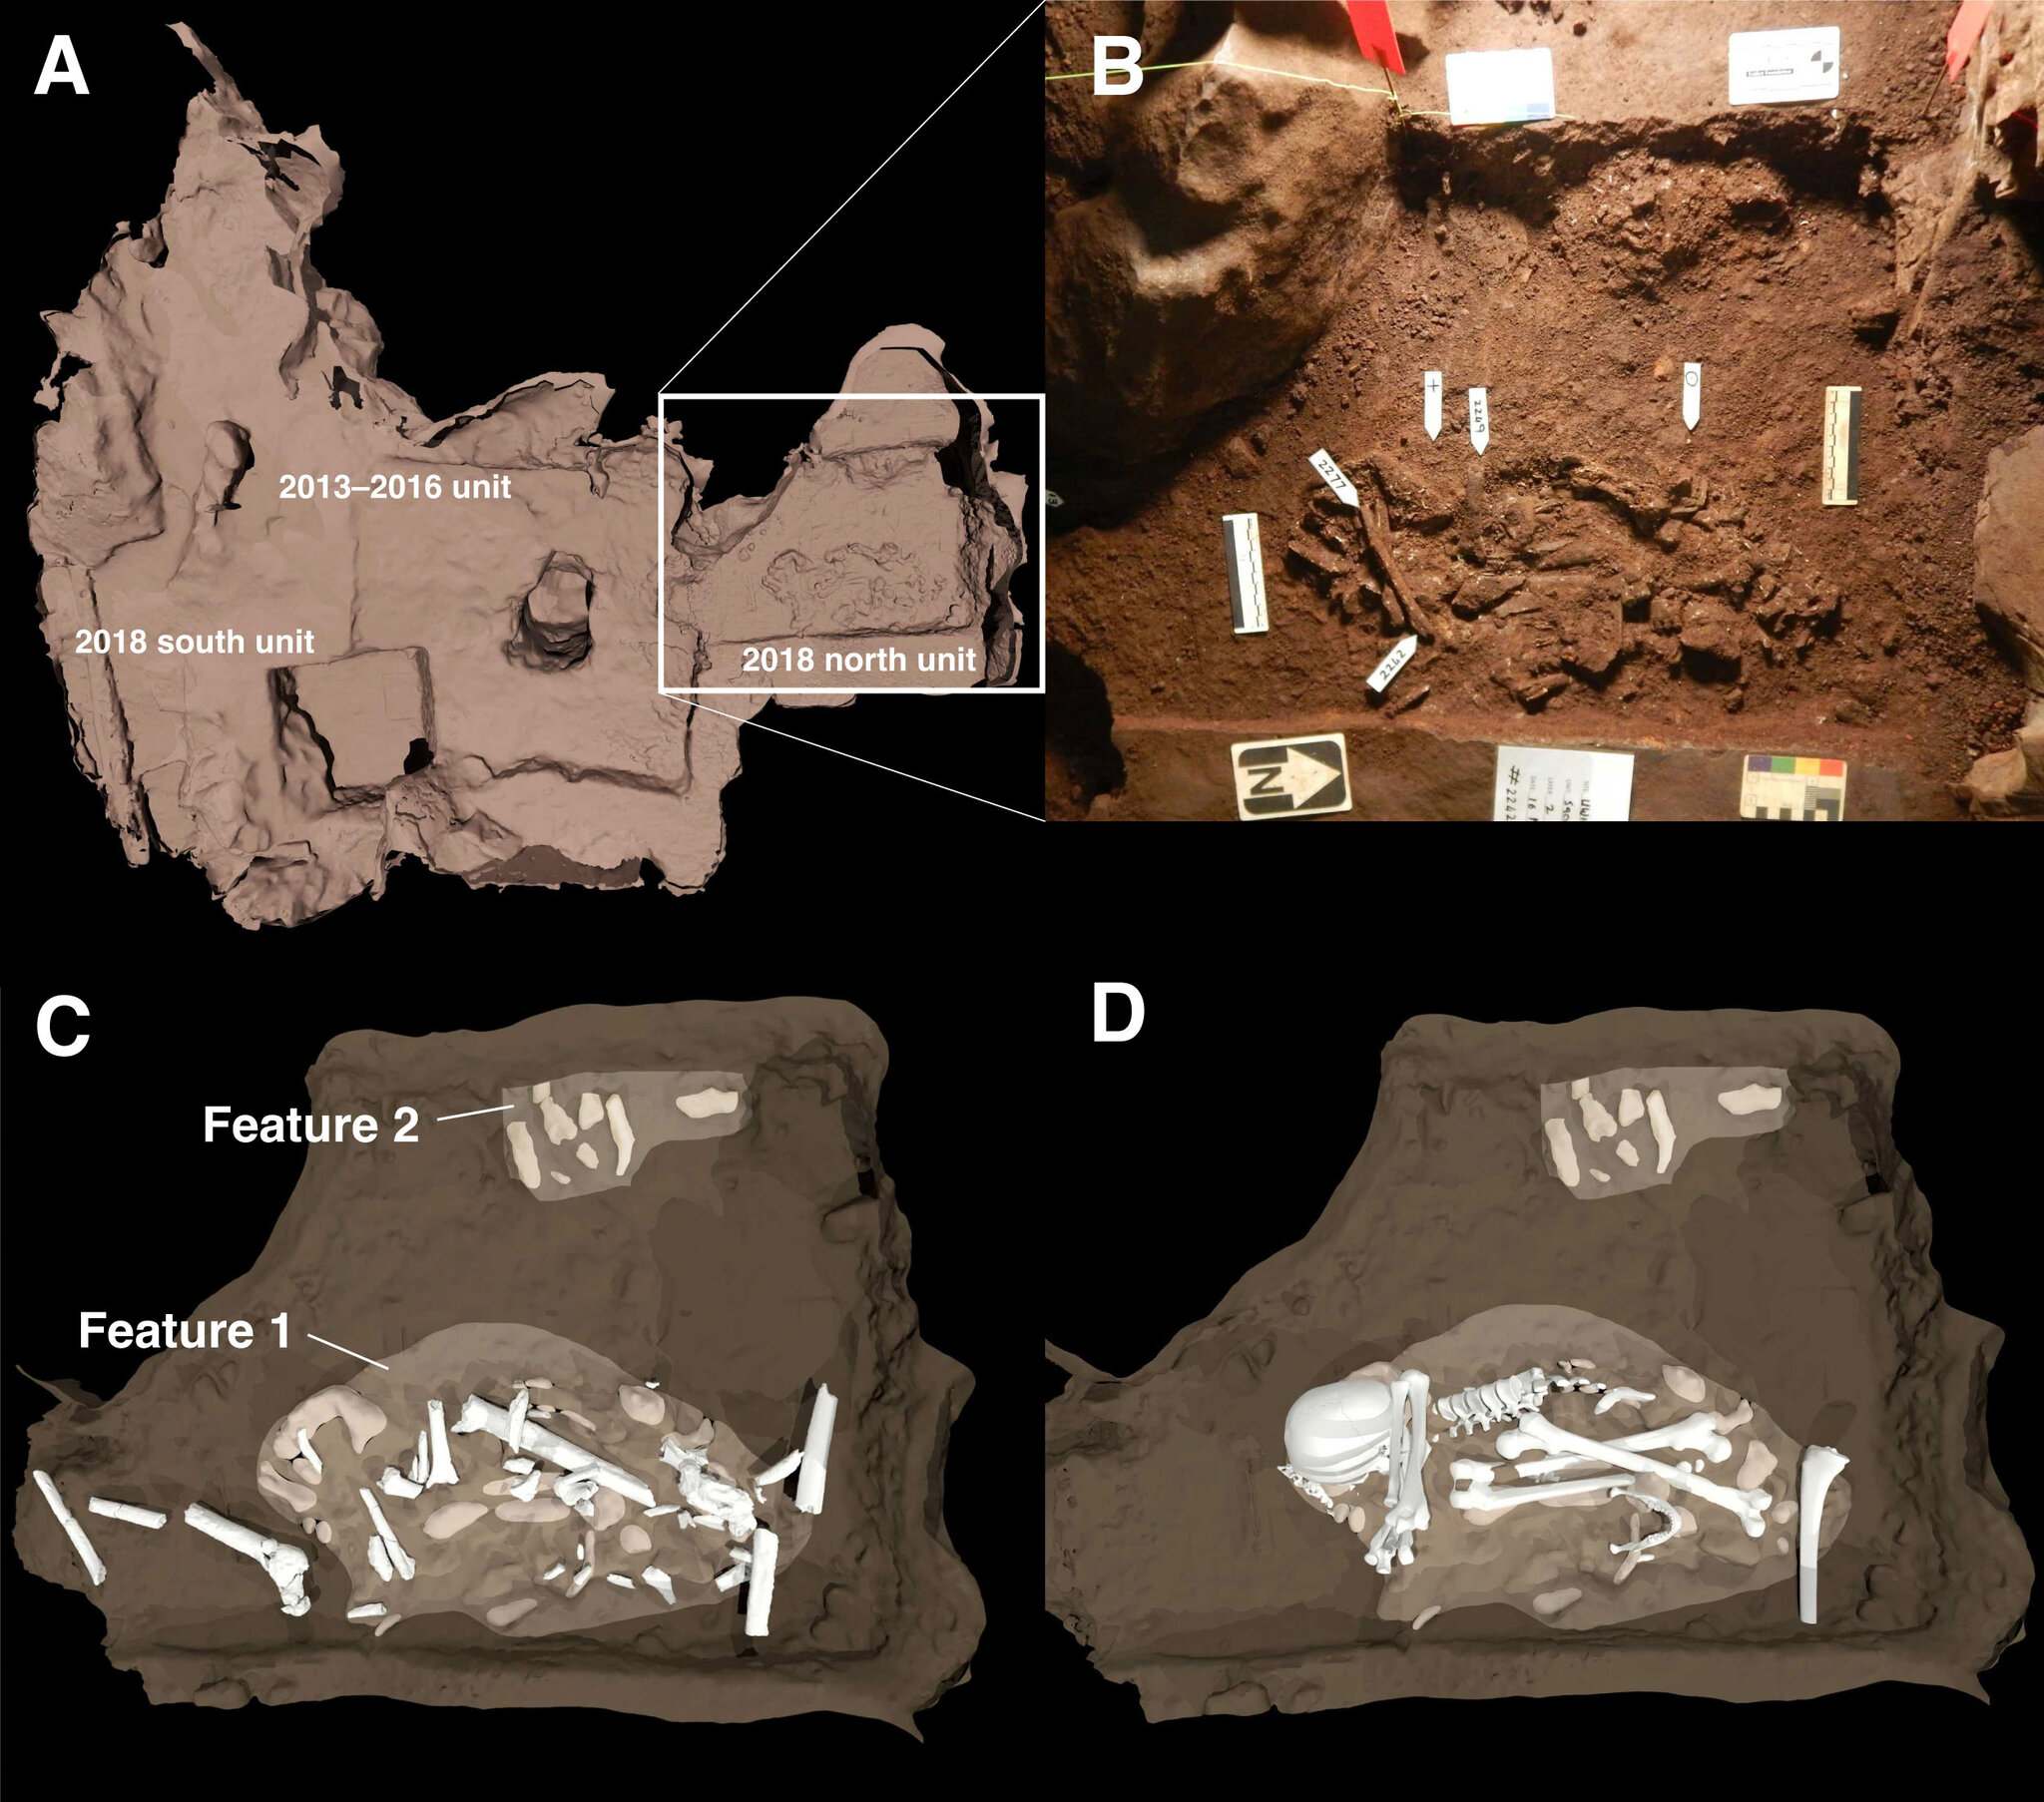 在 Rising Star Cave 的 Dinaledi Chamber 中發現的兩個墓葬特徵的示意圖。 (A) 墓葬相對於 2013-2016 年發掘的位置由正方形區域勾勒出來。 (B) 這是主要墓葬特徵的照片。 特徵 1 是一具成年納勒迪人標本的屍體。 特徵 2 顯示至少一具未成年屍體位於墓地邊緣。 (C) 和 (D) 是顯示骨頭如何放置在墳墓內的插圖。